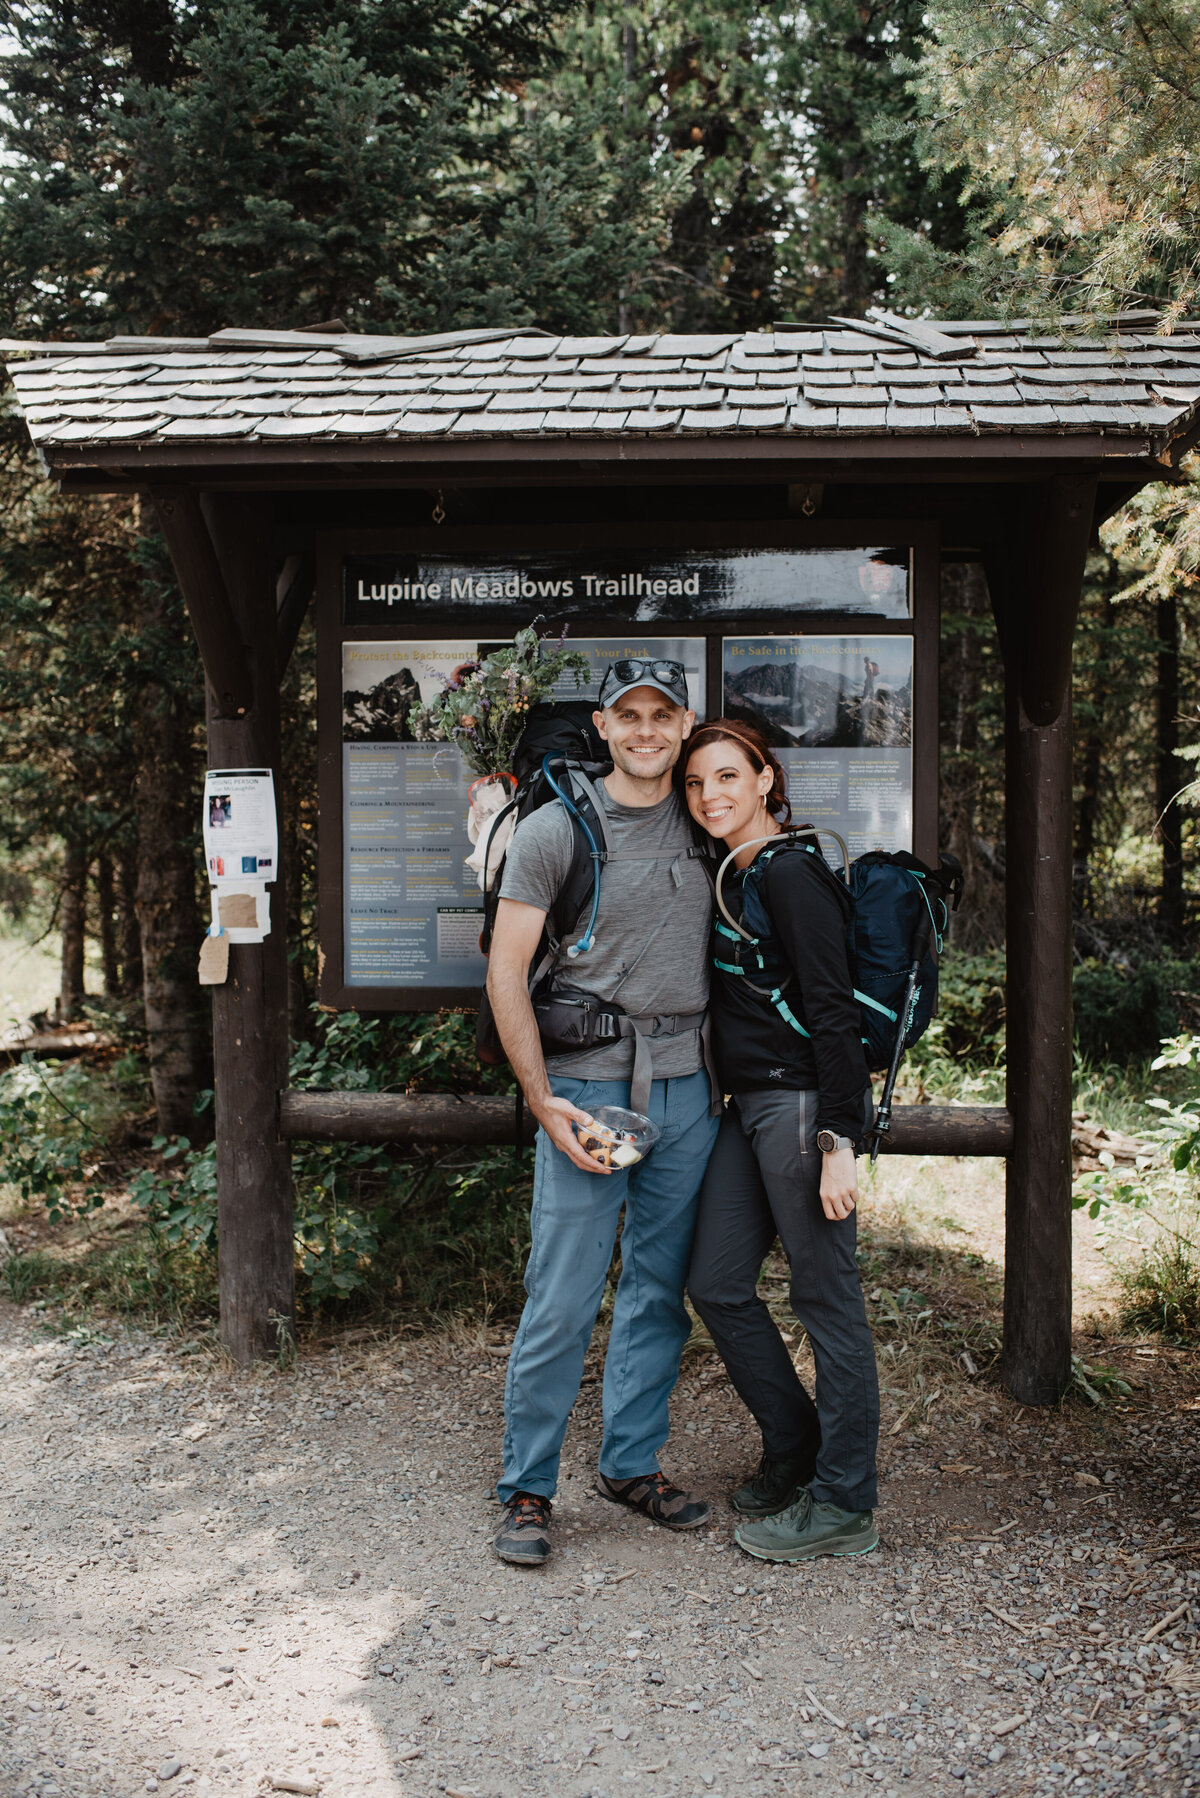 Jackson Hole photographers capture couple going hiking